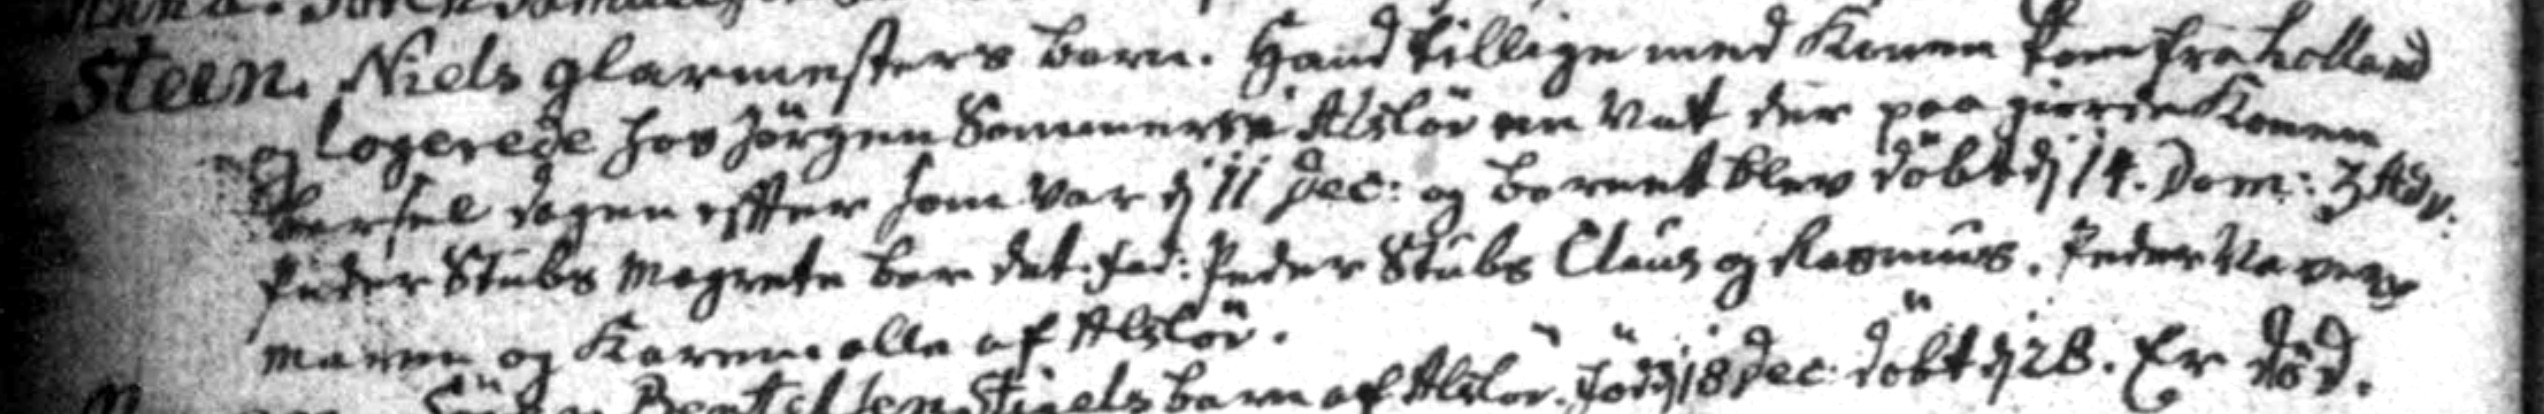 Steen Nielsens dåb i Nørre Alskev, da forældrene var på gennemrejse. Drengen døde siden i oktober 1783 i Ryde.